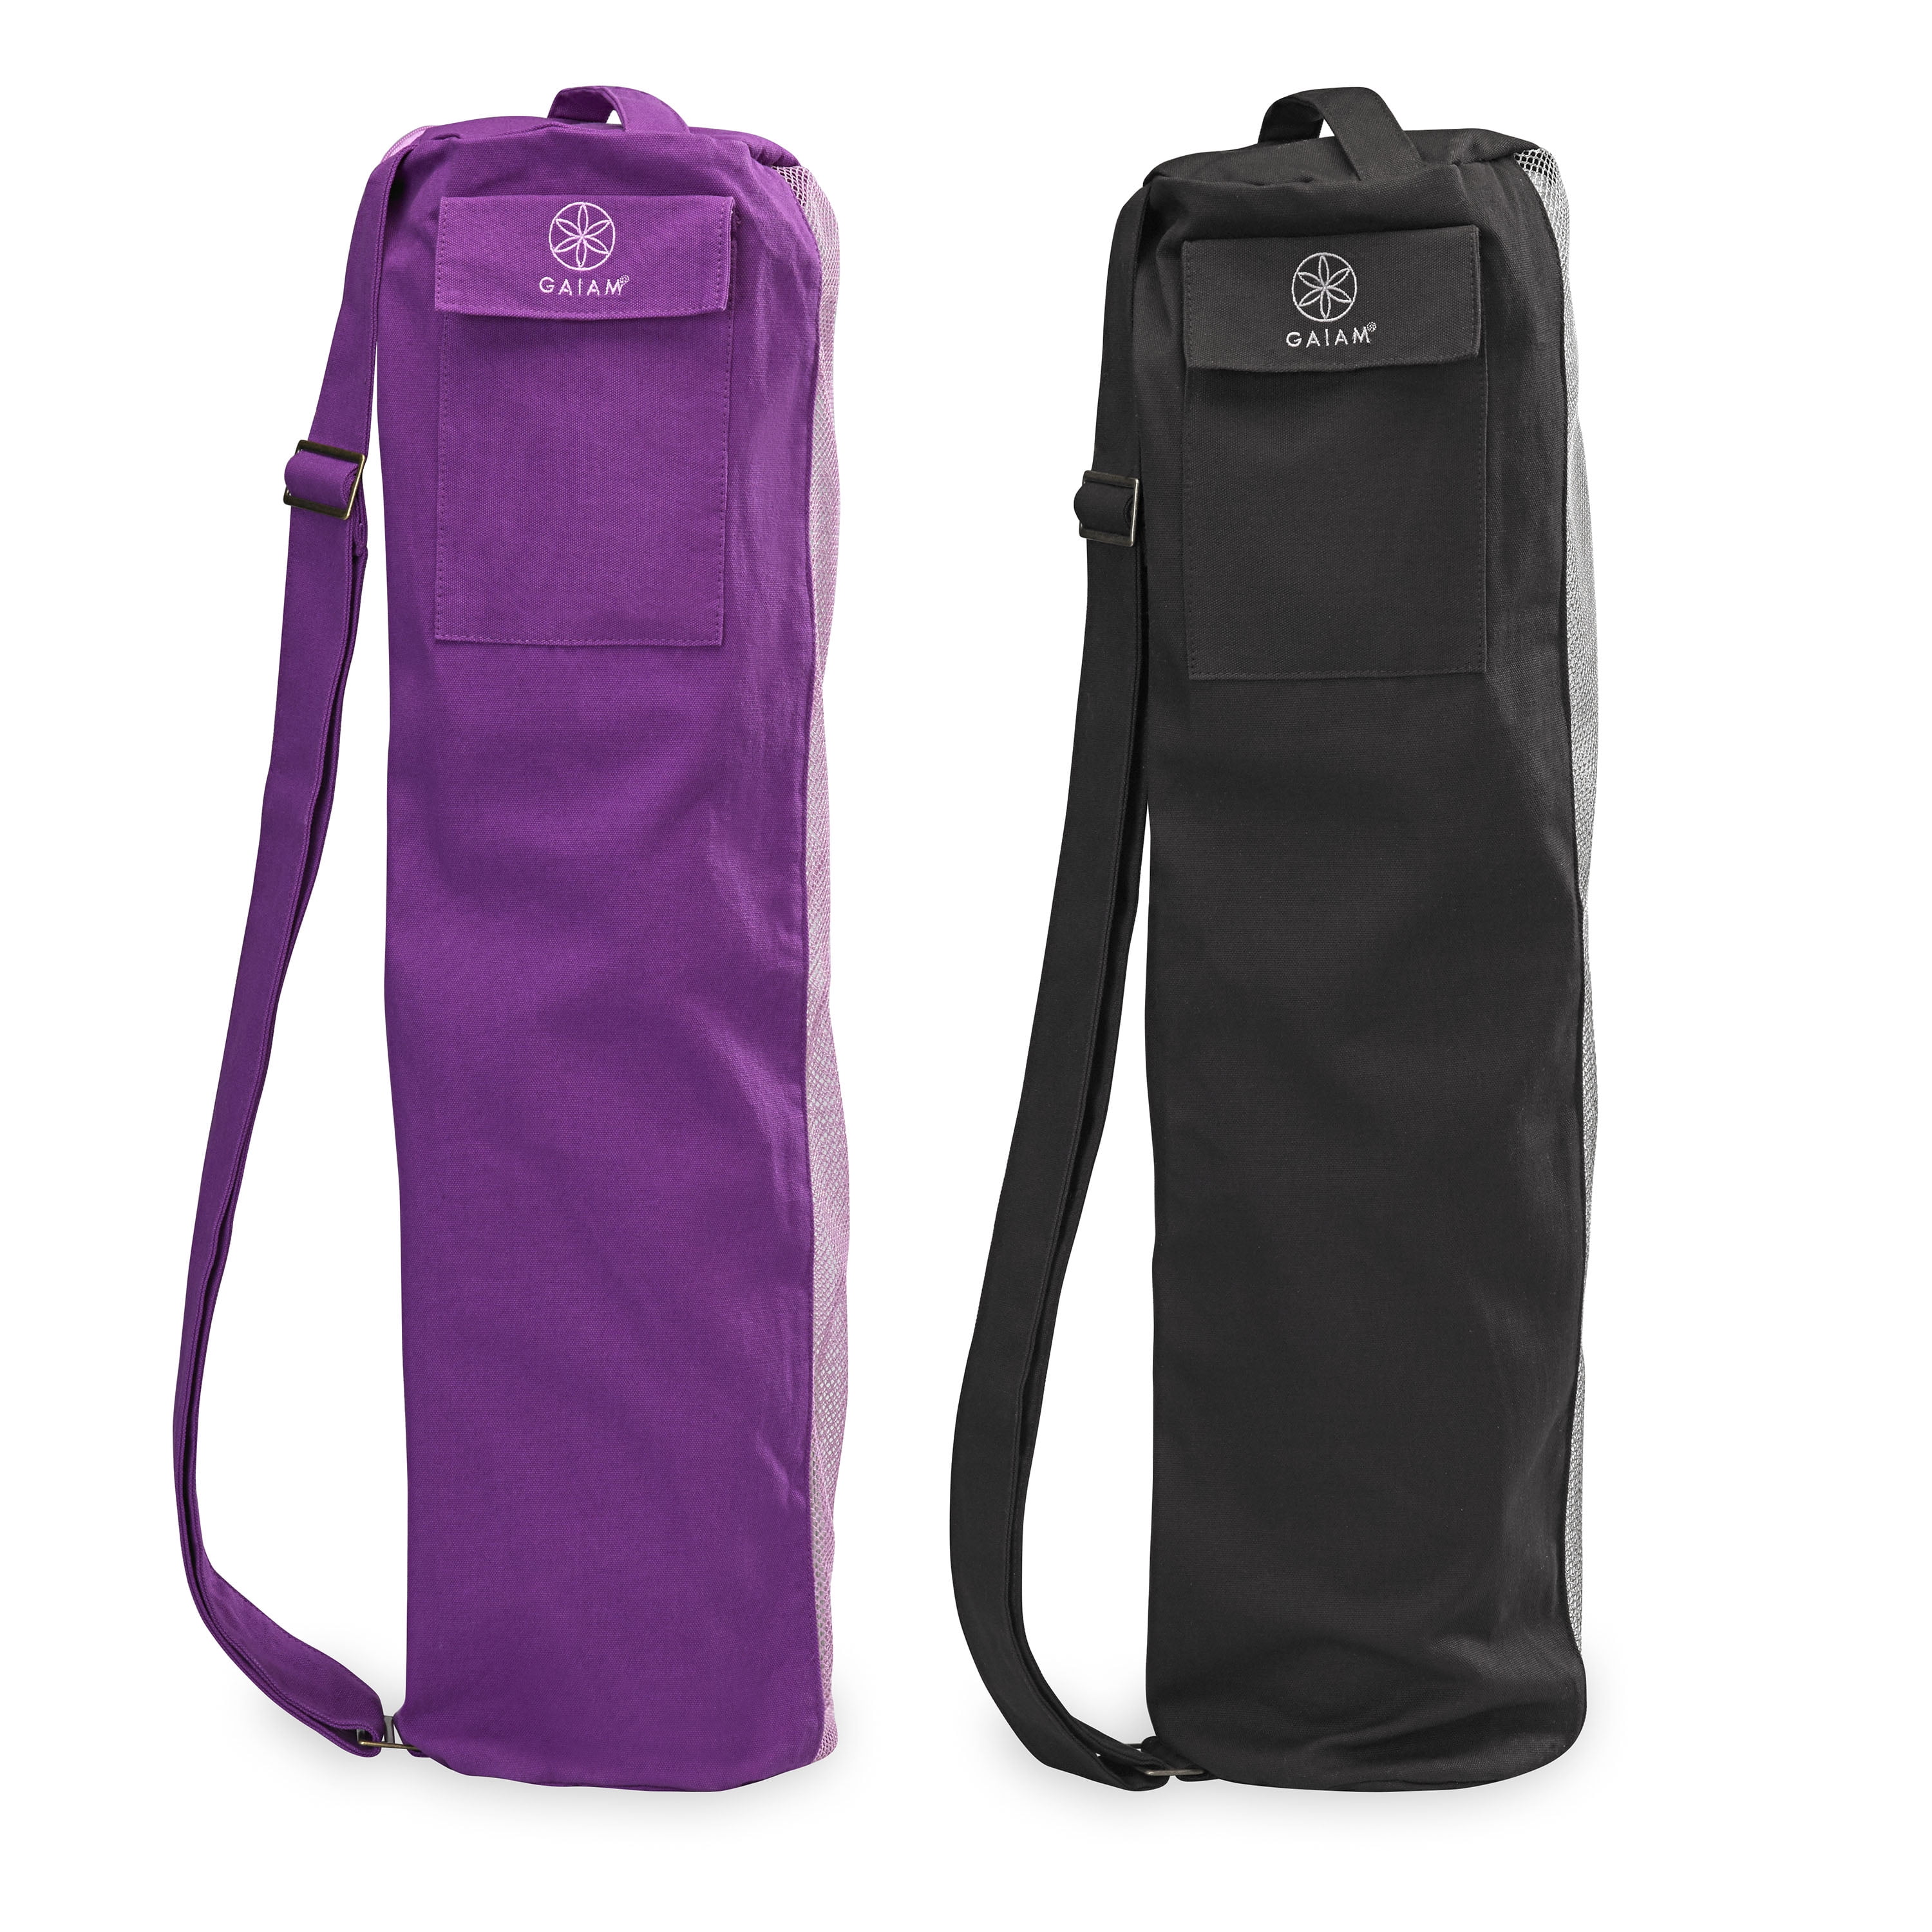 Gaiam Breathable Mat Bag Asst Black/Purple 